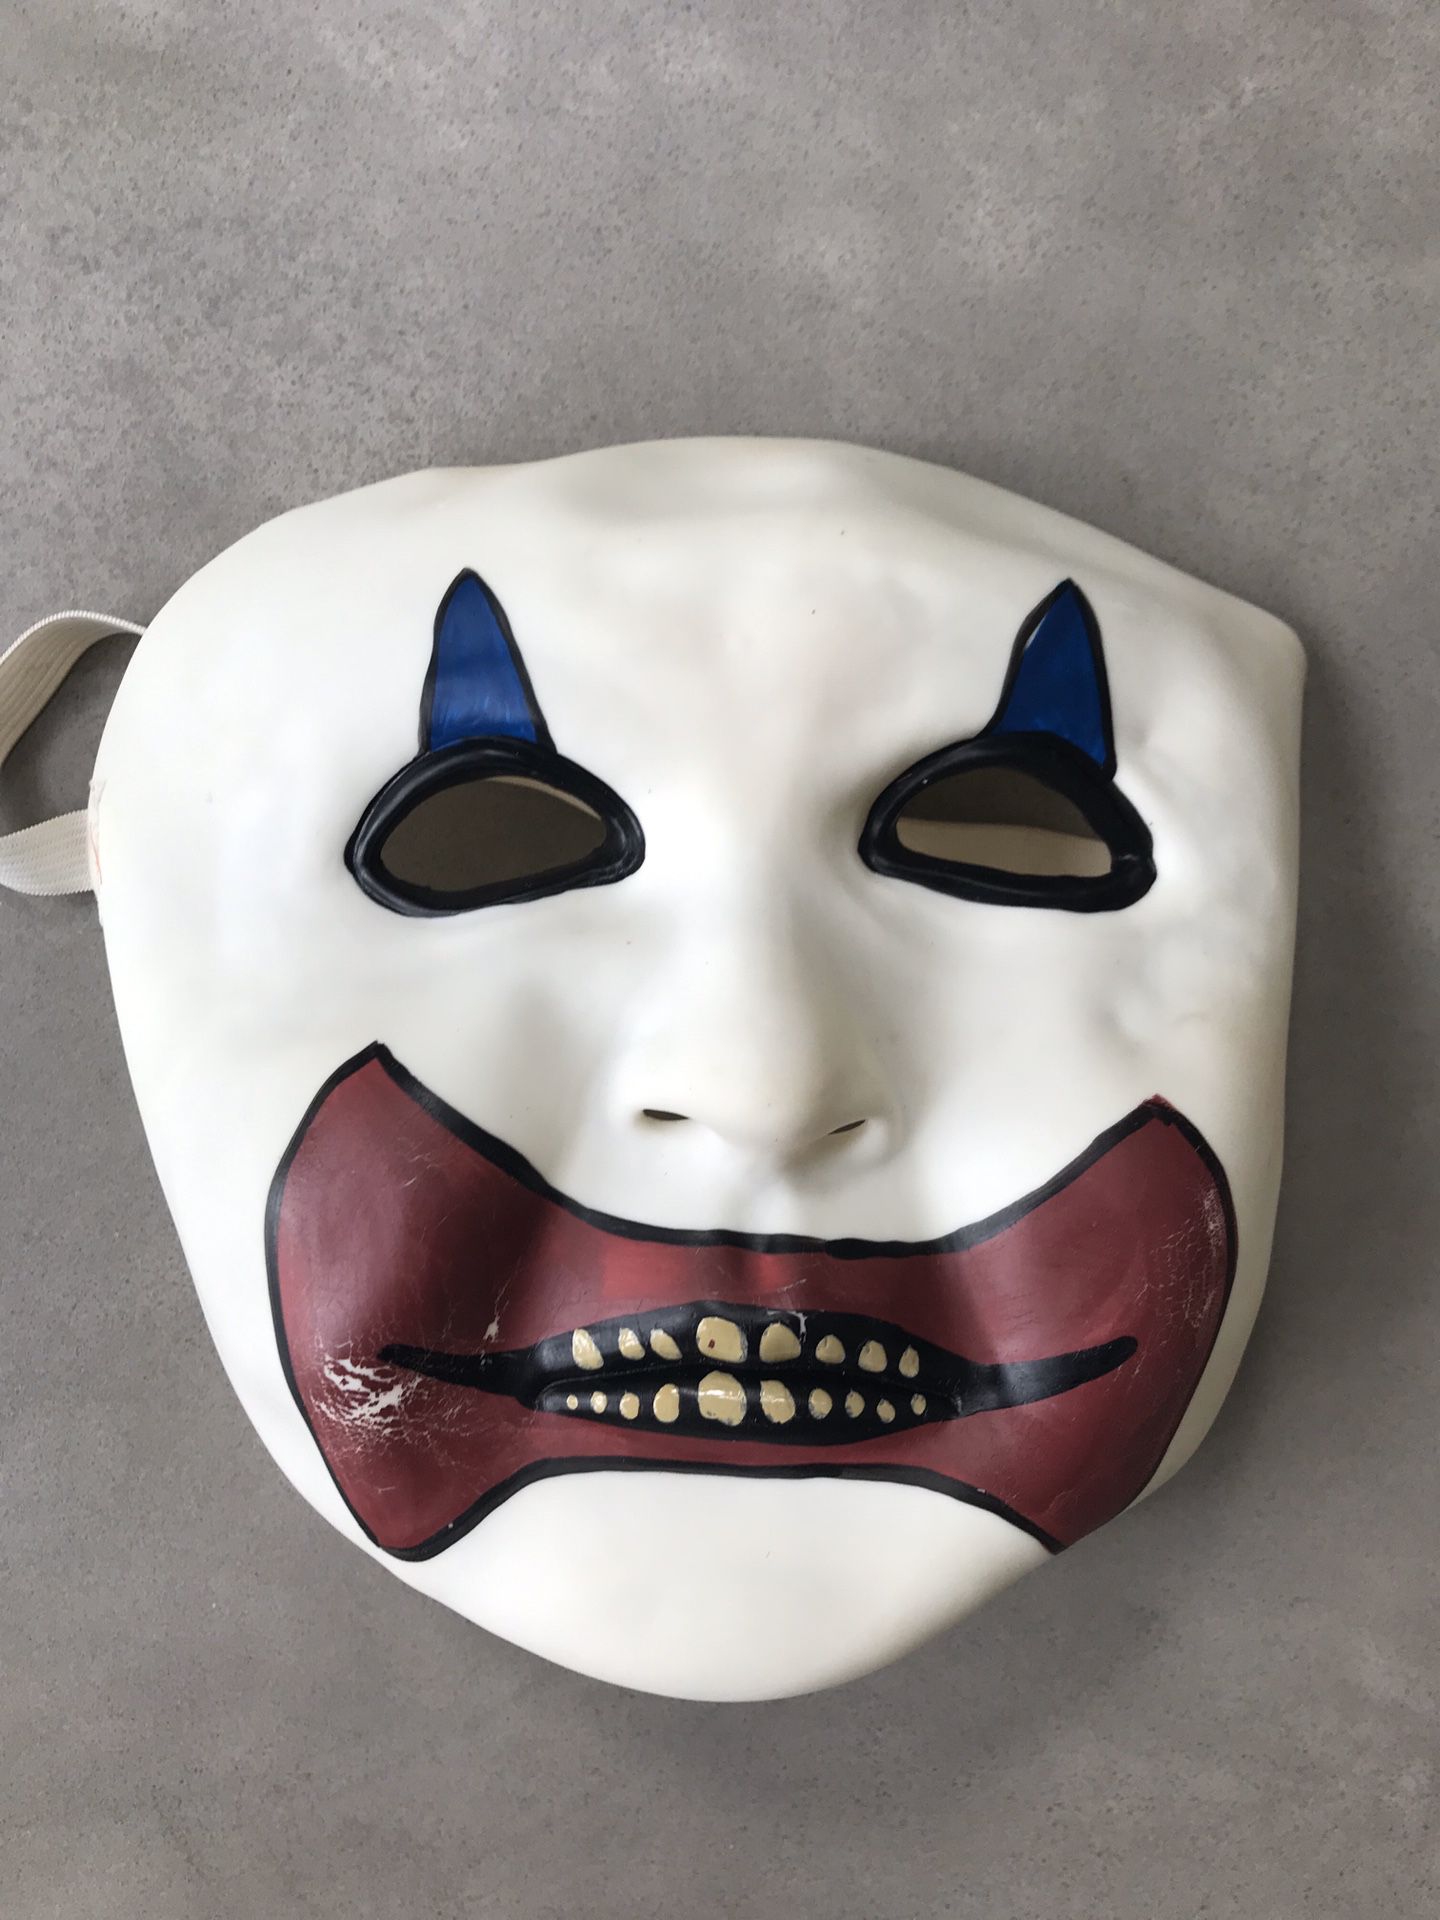 Joker Clown face mask - Halloween